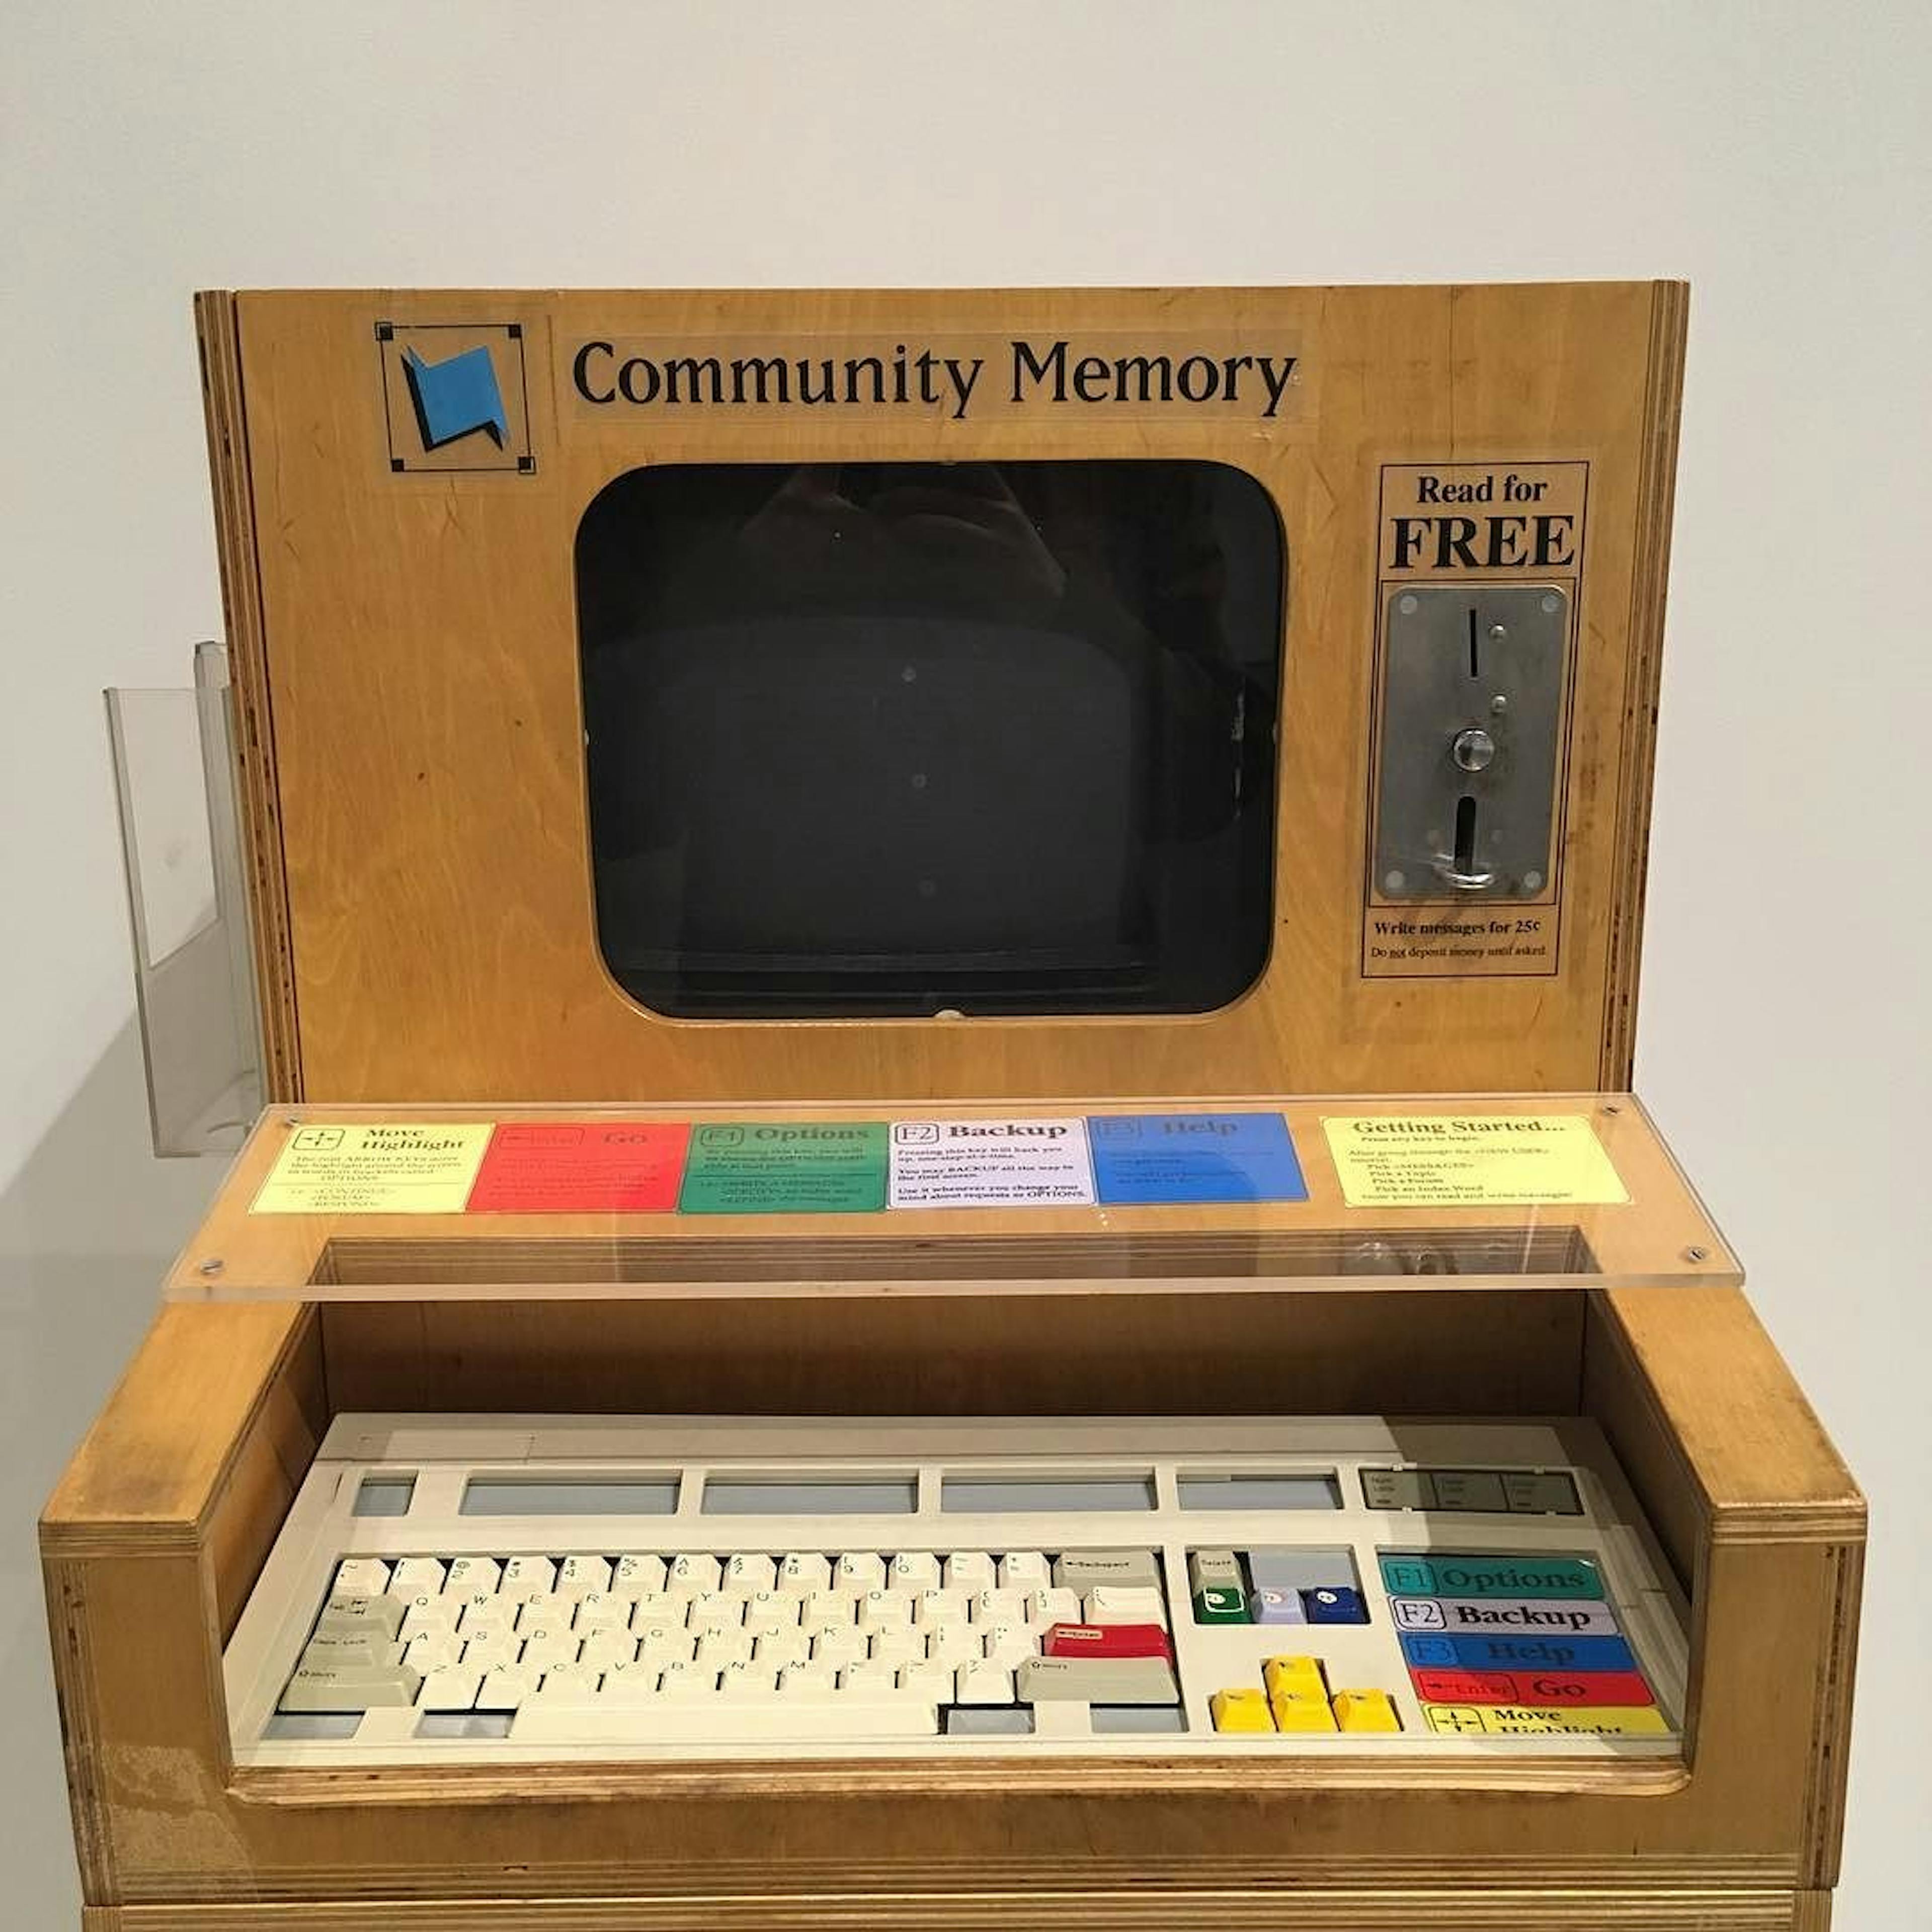 Terminal de Memoria Comunitaria en el Museo de Historia de la Computación (California). Imagen de Evan P. Cordes / Wikimedia